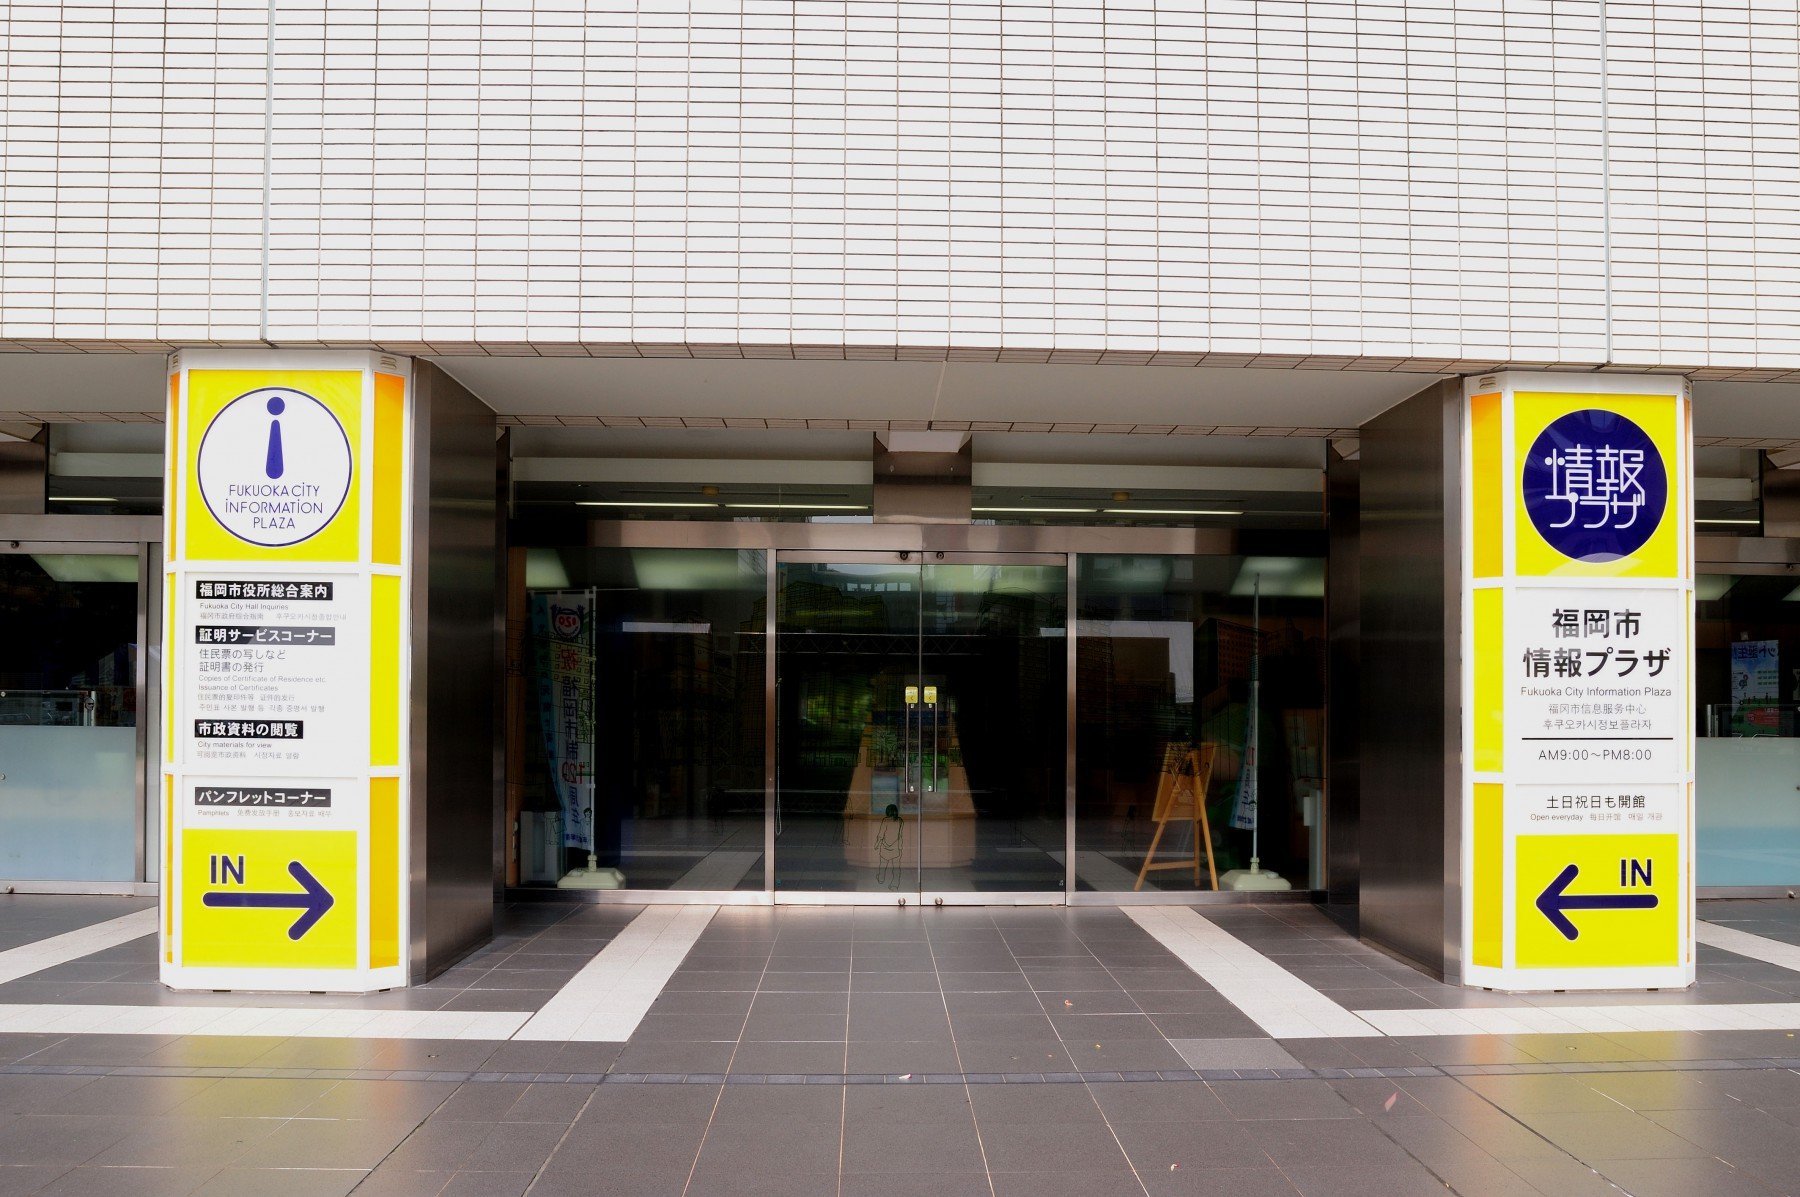 福岡市情報プラザ(2009)の画像